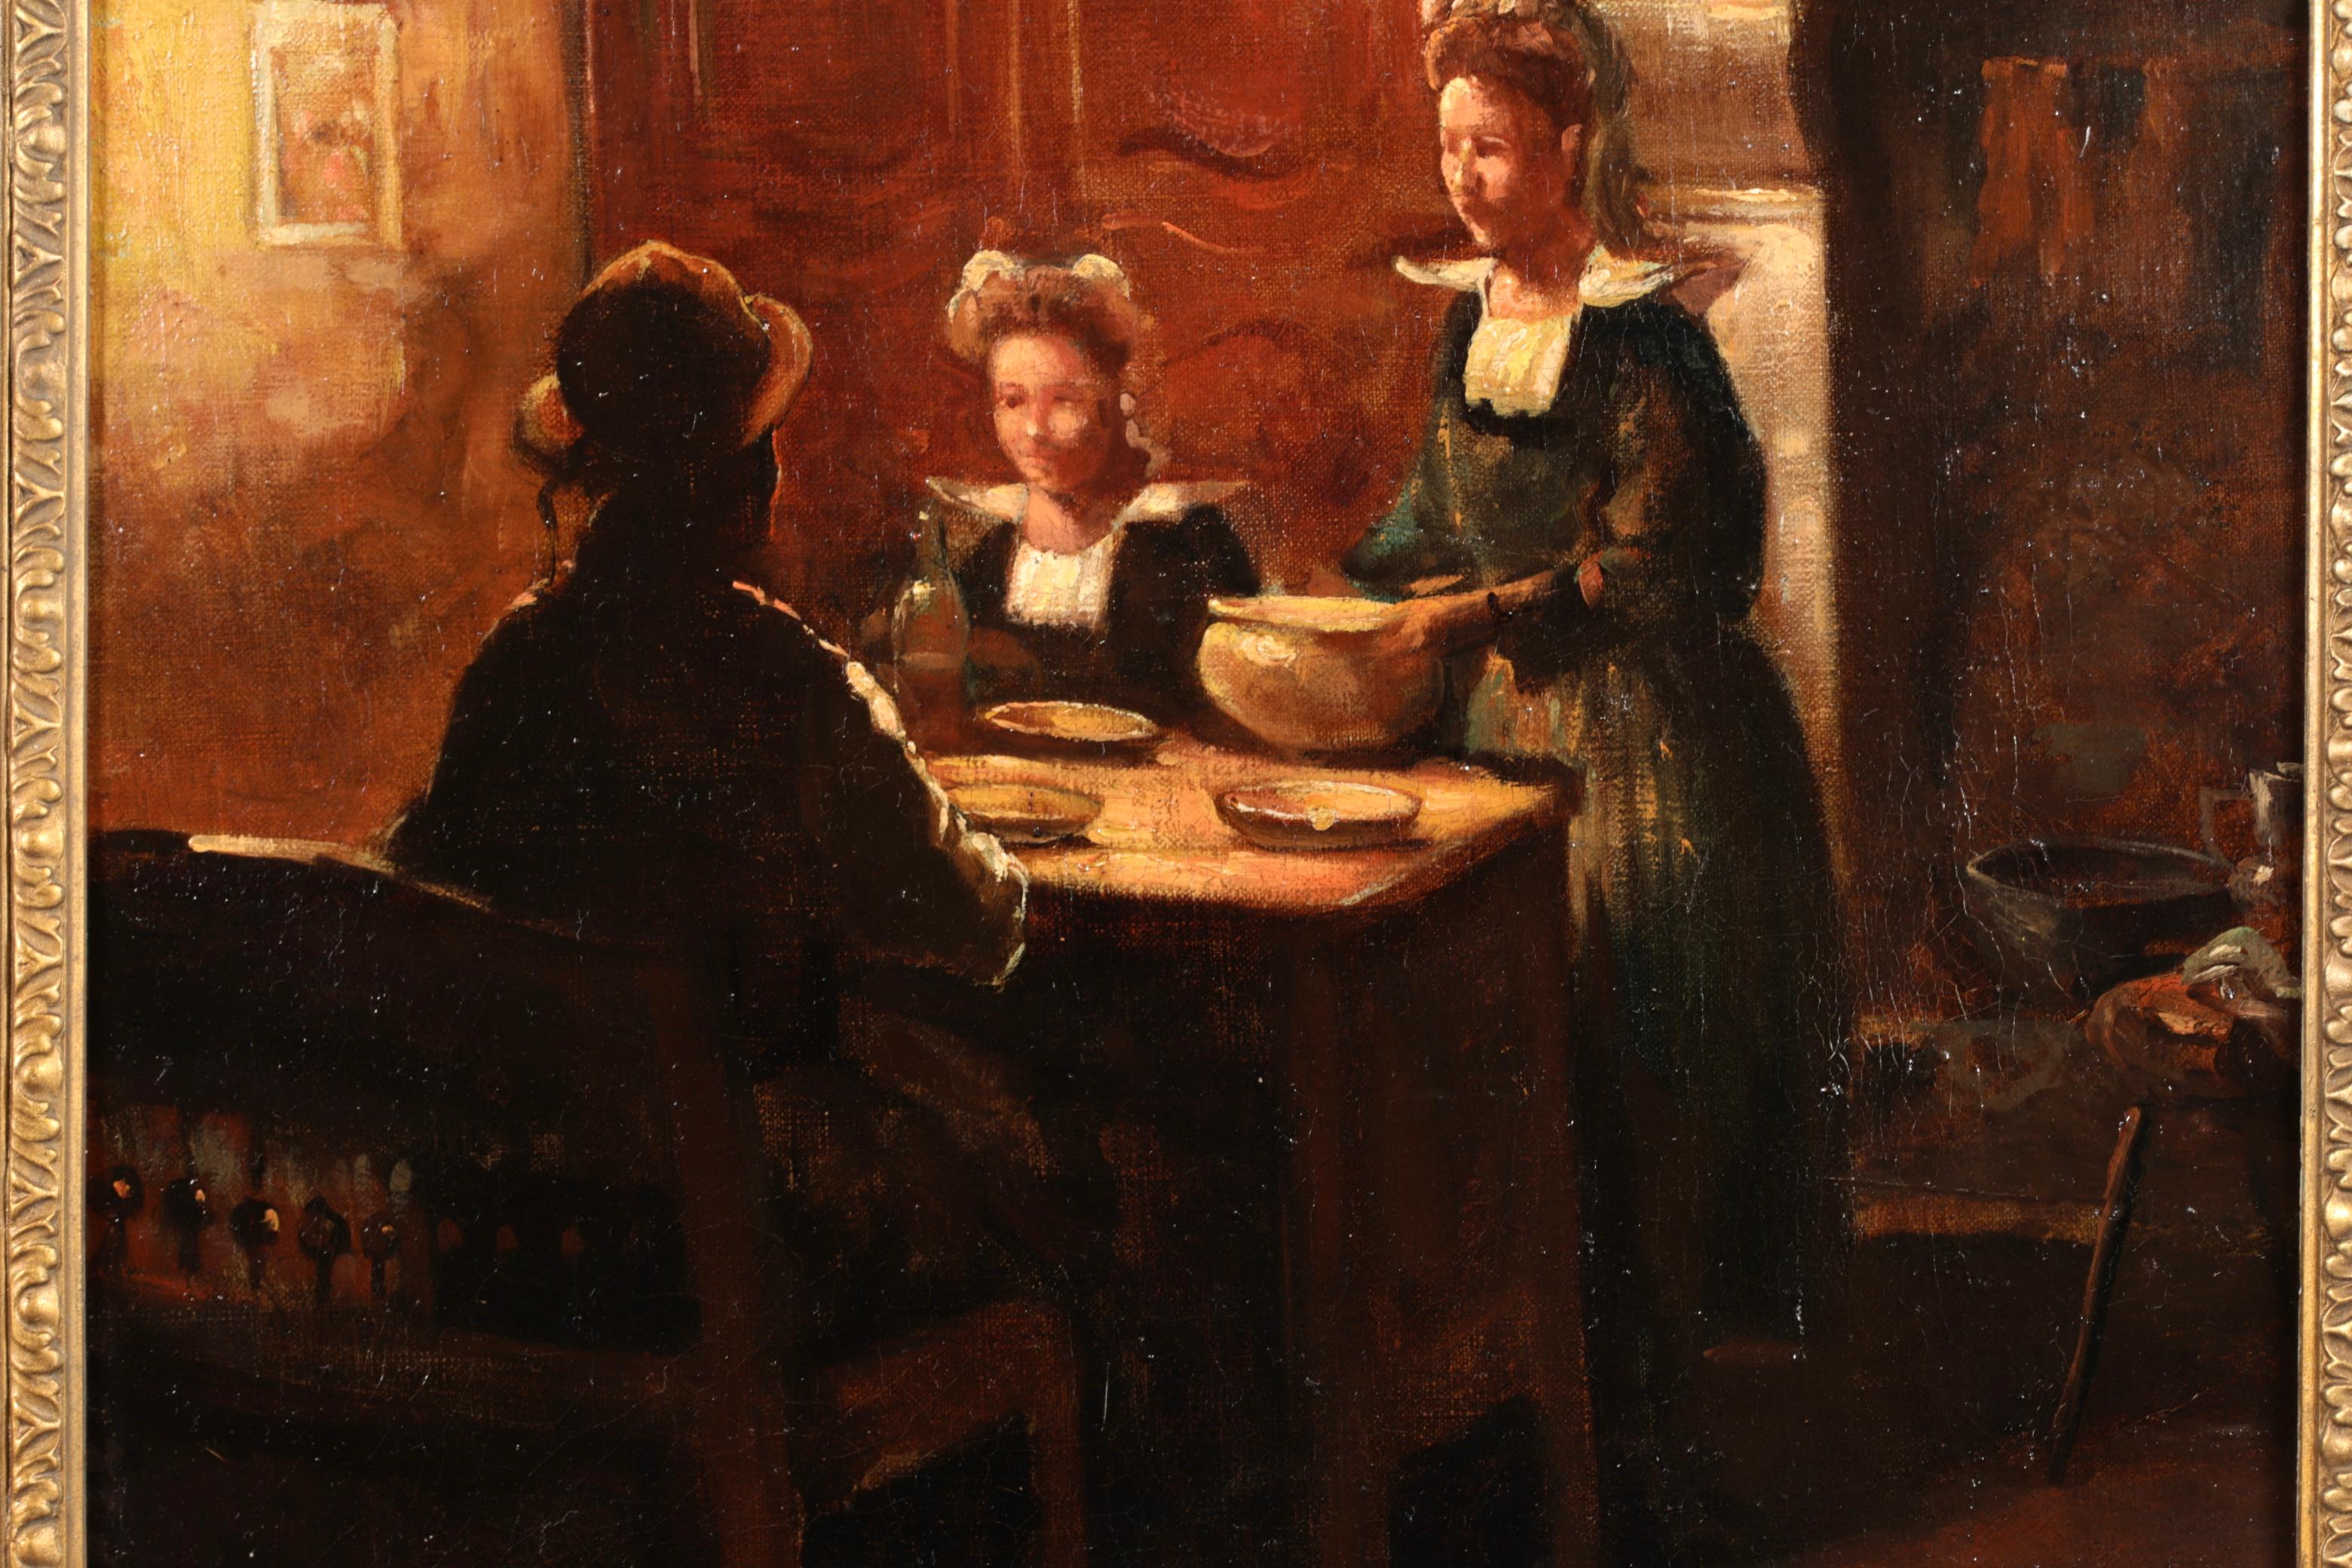 Huile sur toile signée de figures dans un intérieur circa 1910 par le peintre impressionniste français Edouard Leon Cortes. Cette œuvre charmante et nostalgique représente une famille en train de dîner dans une scène de cuisine typiquement bretonne.